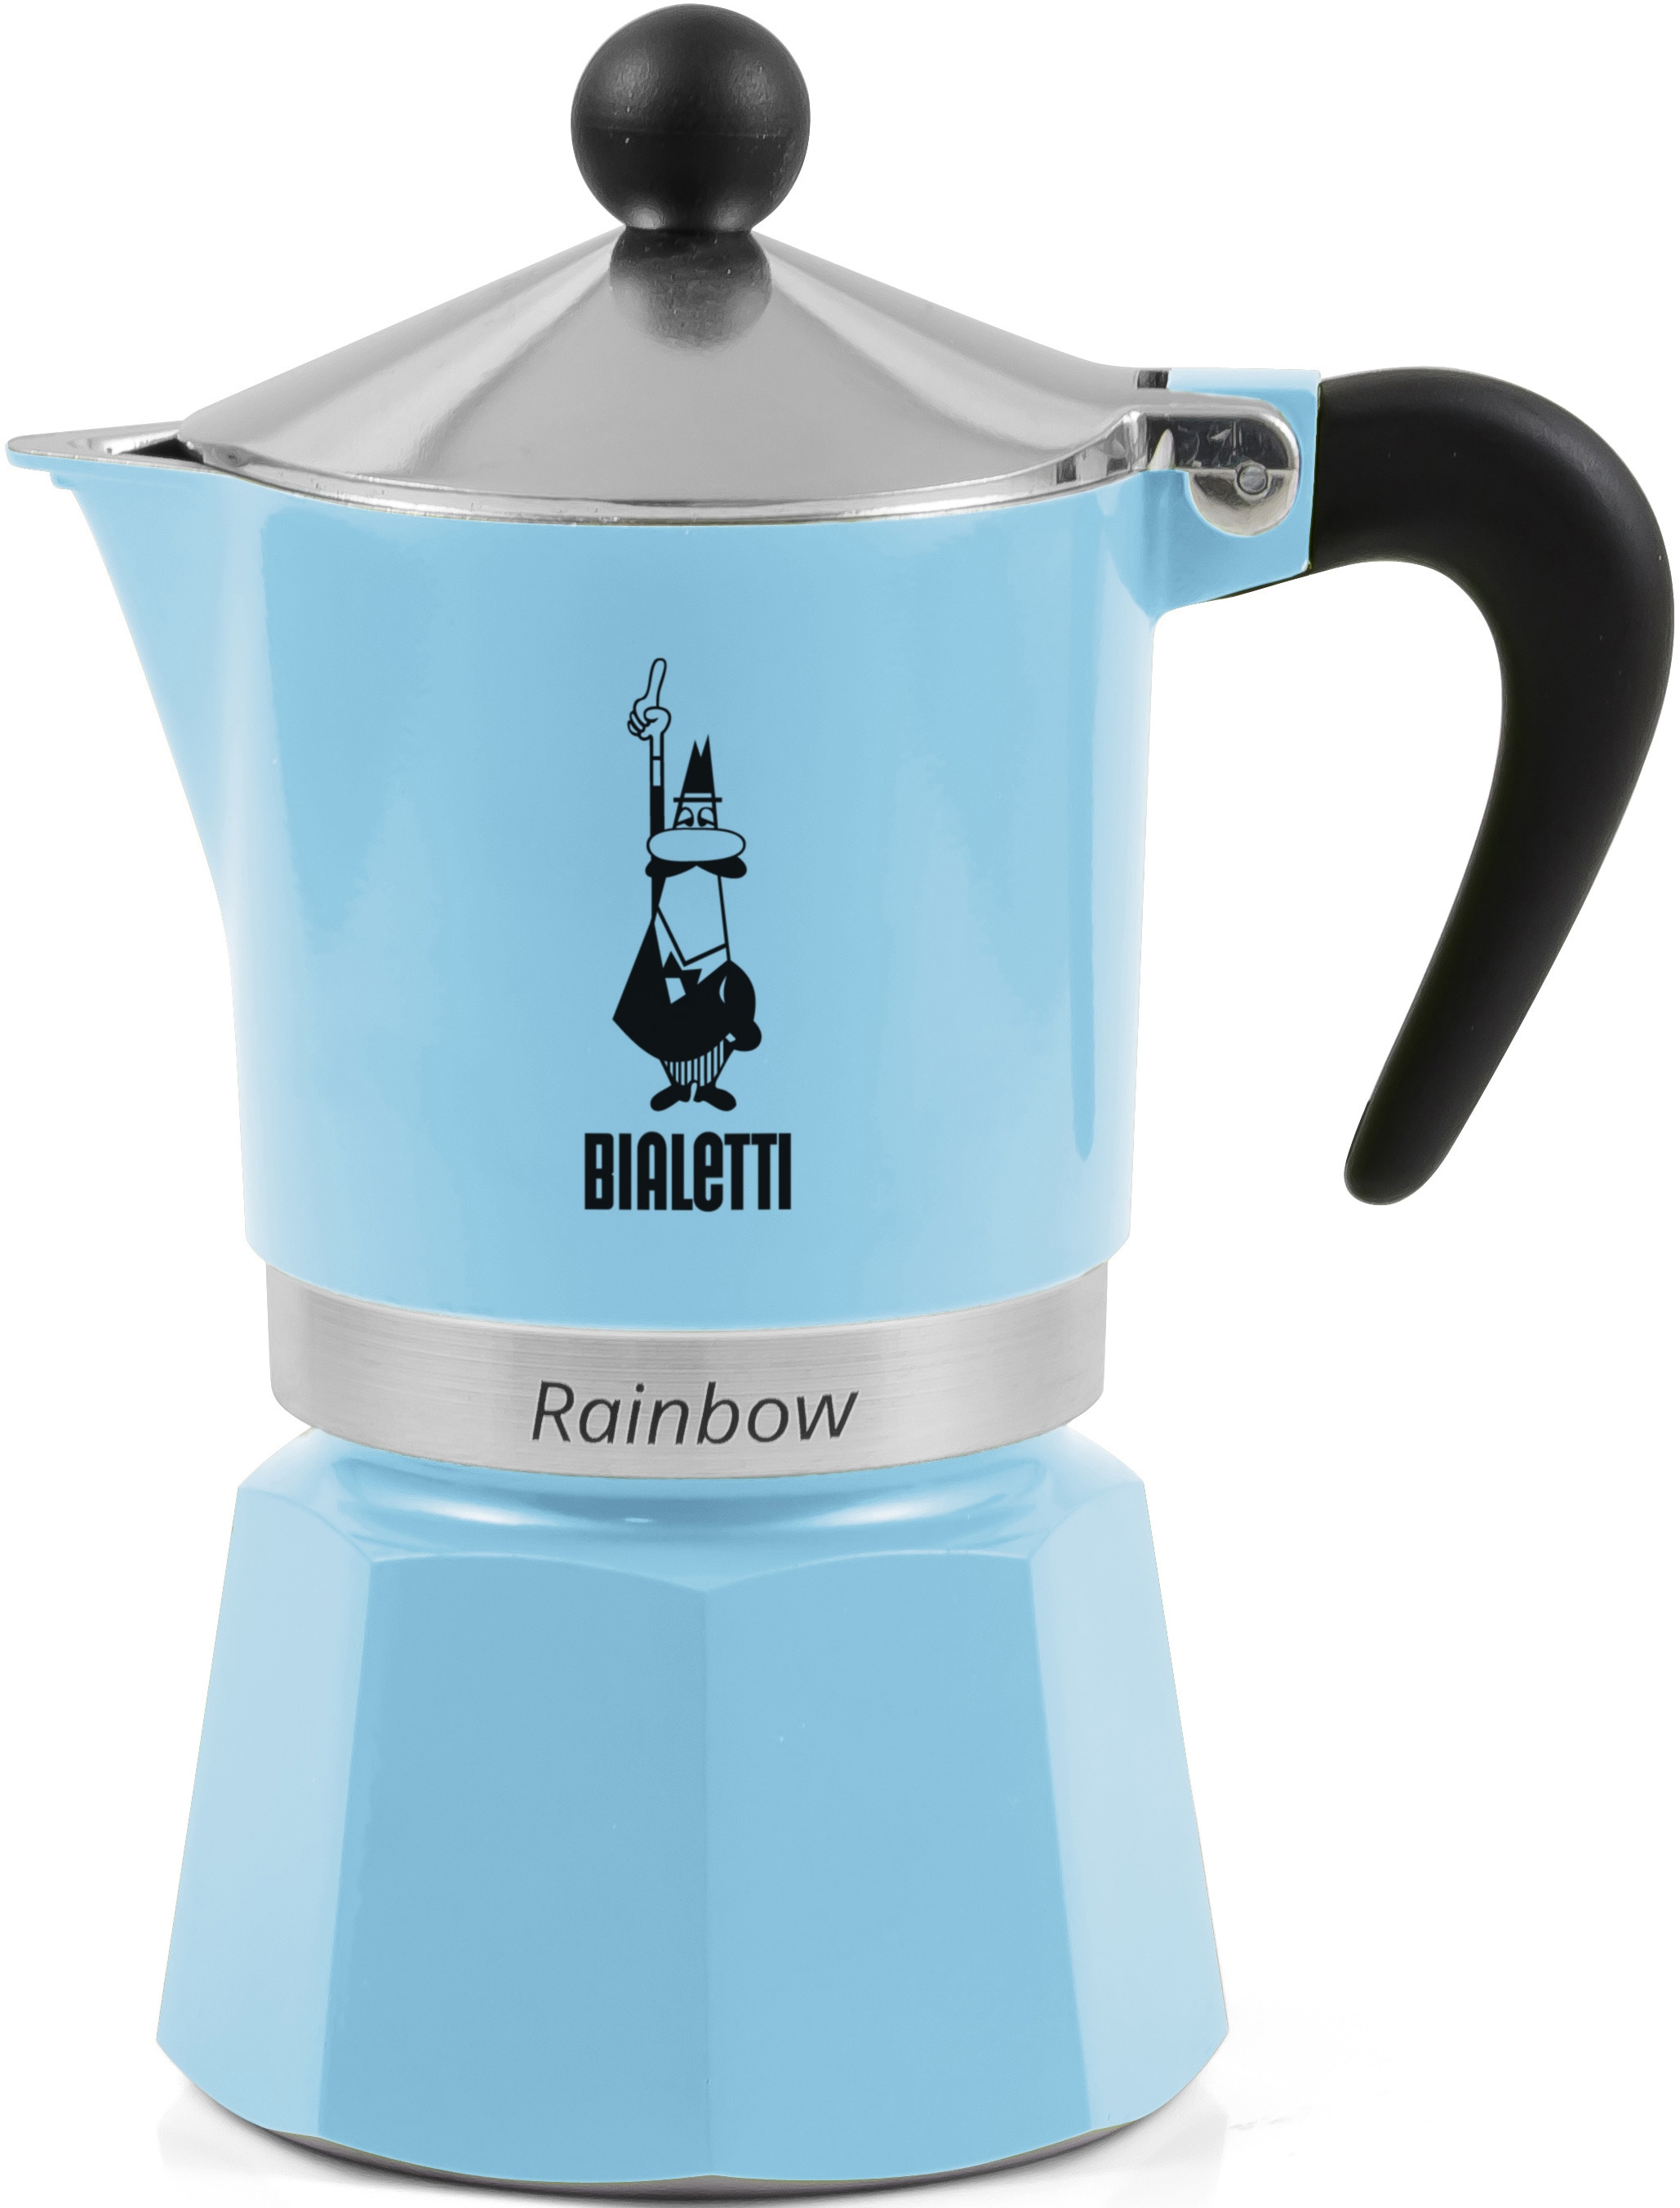 BIALETTI Espressokocher »Rainbow«, 0,13 l Kaffeekanne, Aluminium